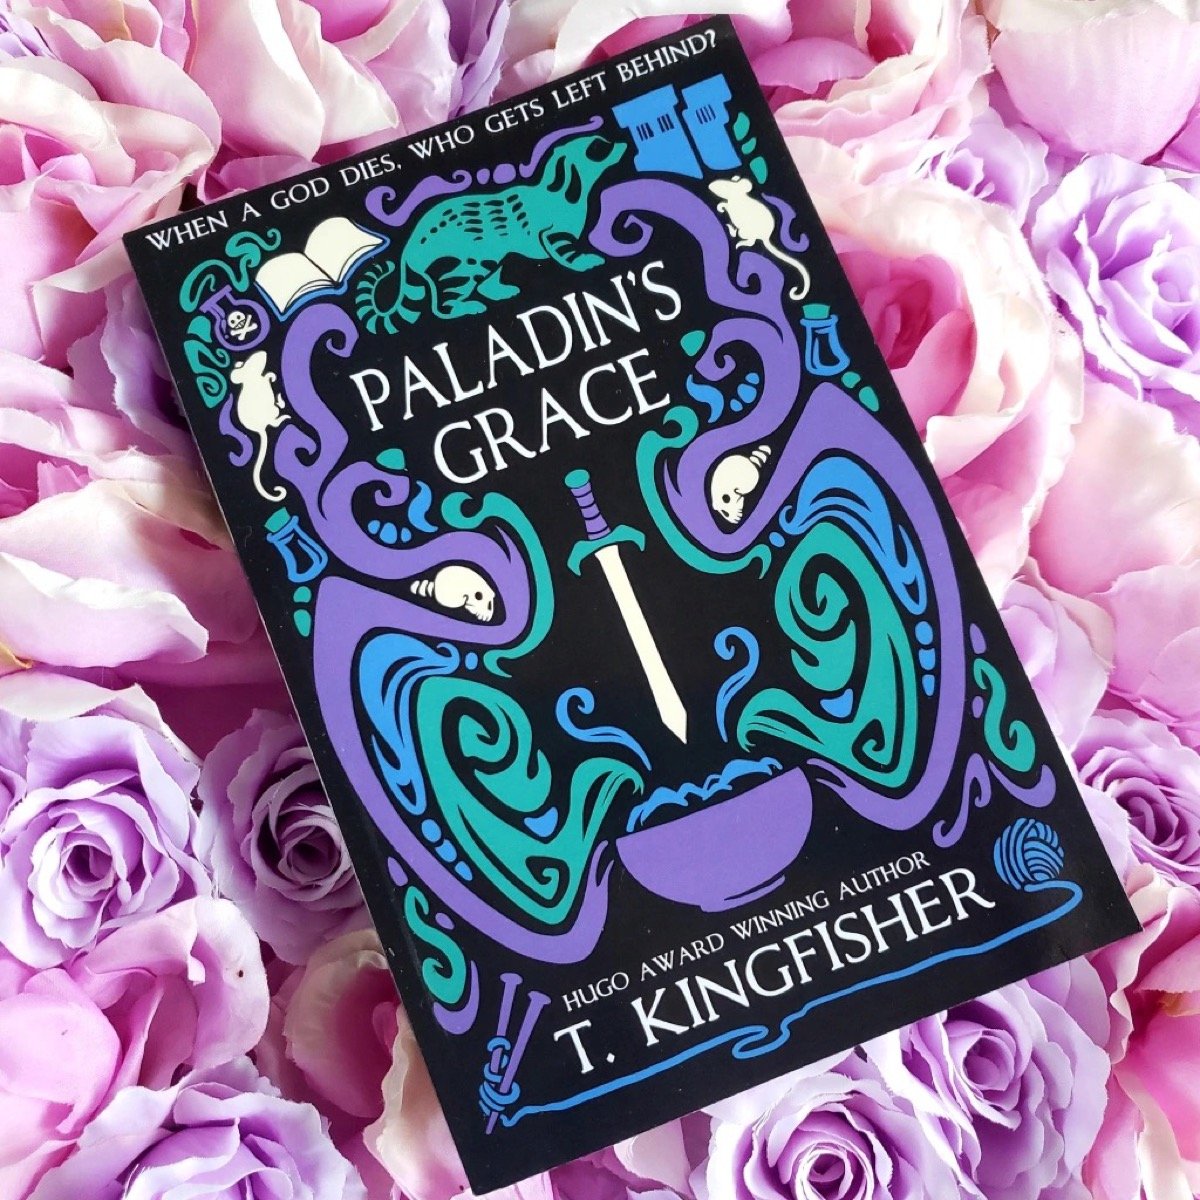 The novel Paladin's Grace